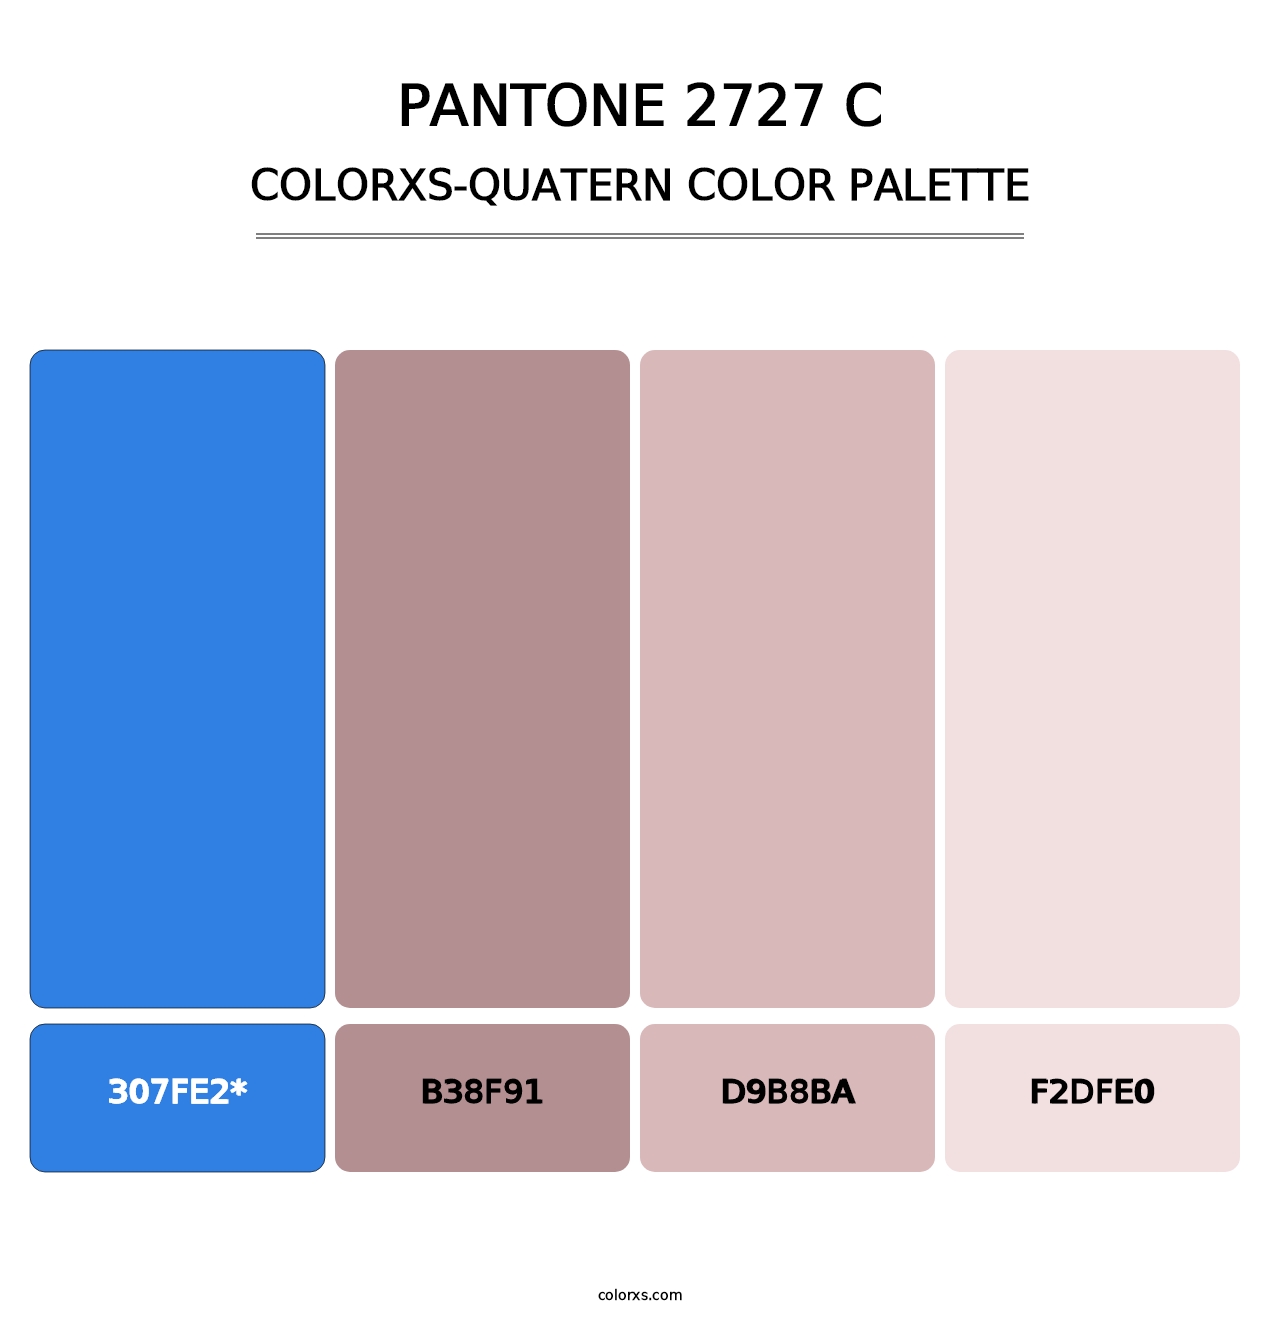 PANTONE 2727 C - Colorxs Quad Palette